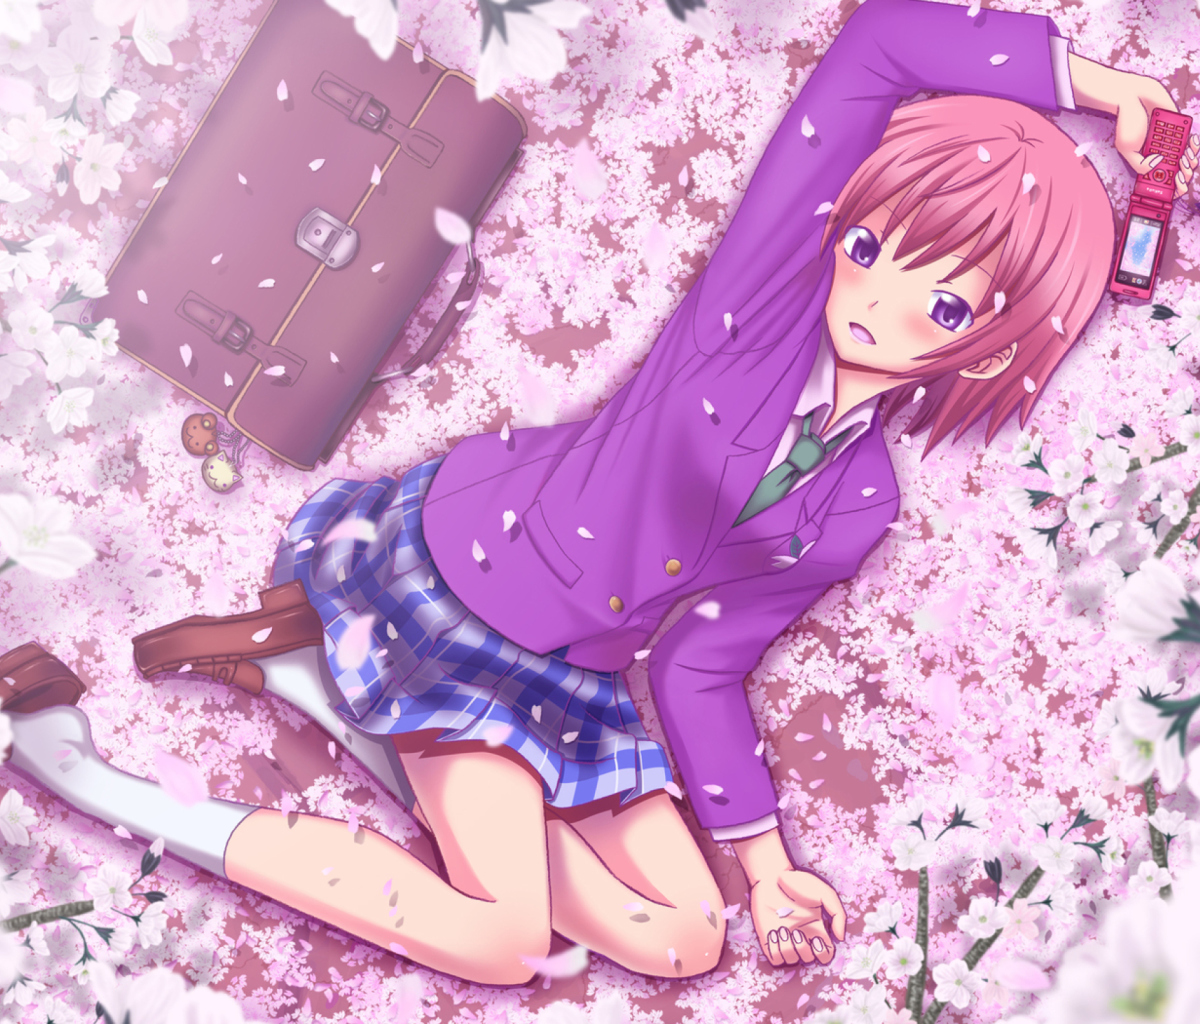 Das Anime Sakura Wallpaper 1200x1024